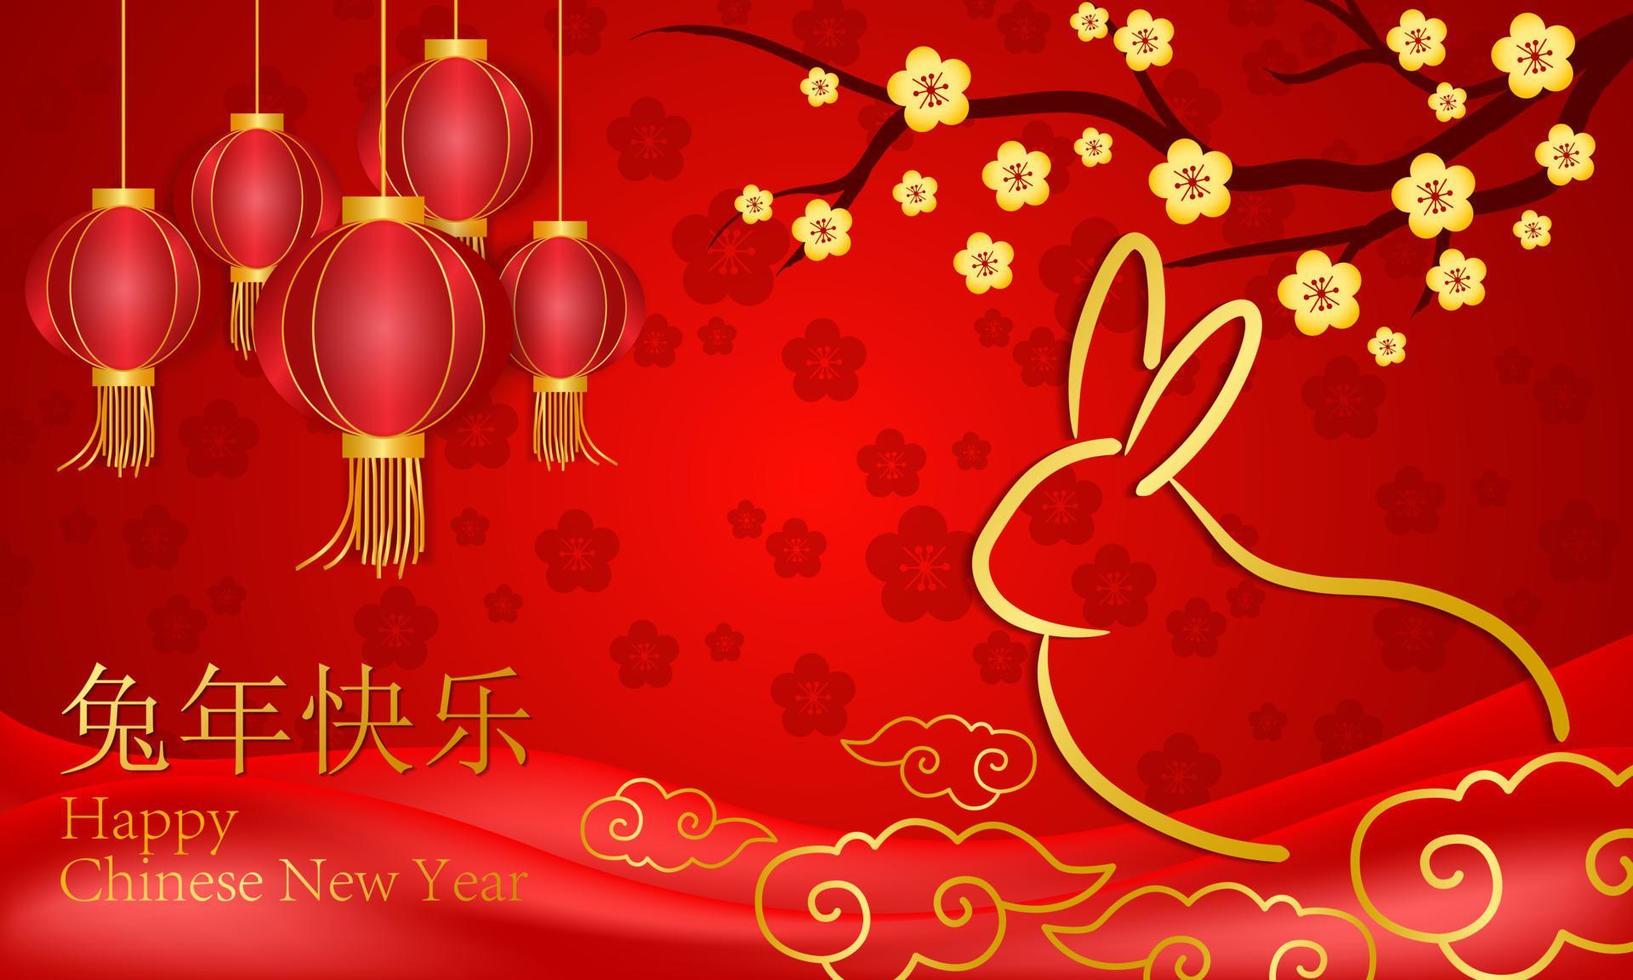 Cinese nuovo anno. anno di il coniglio rosso e oro su sfondo. vettore disegno.illustrazione.